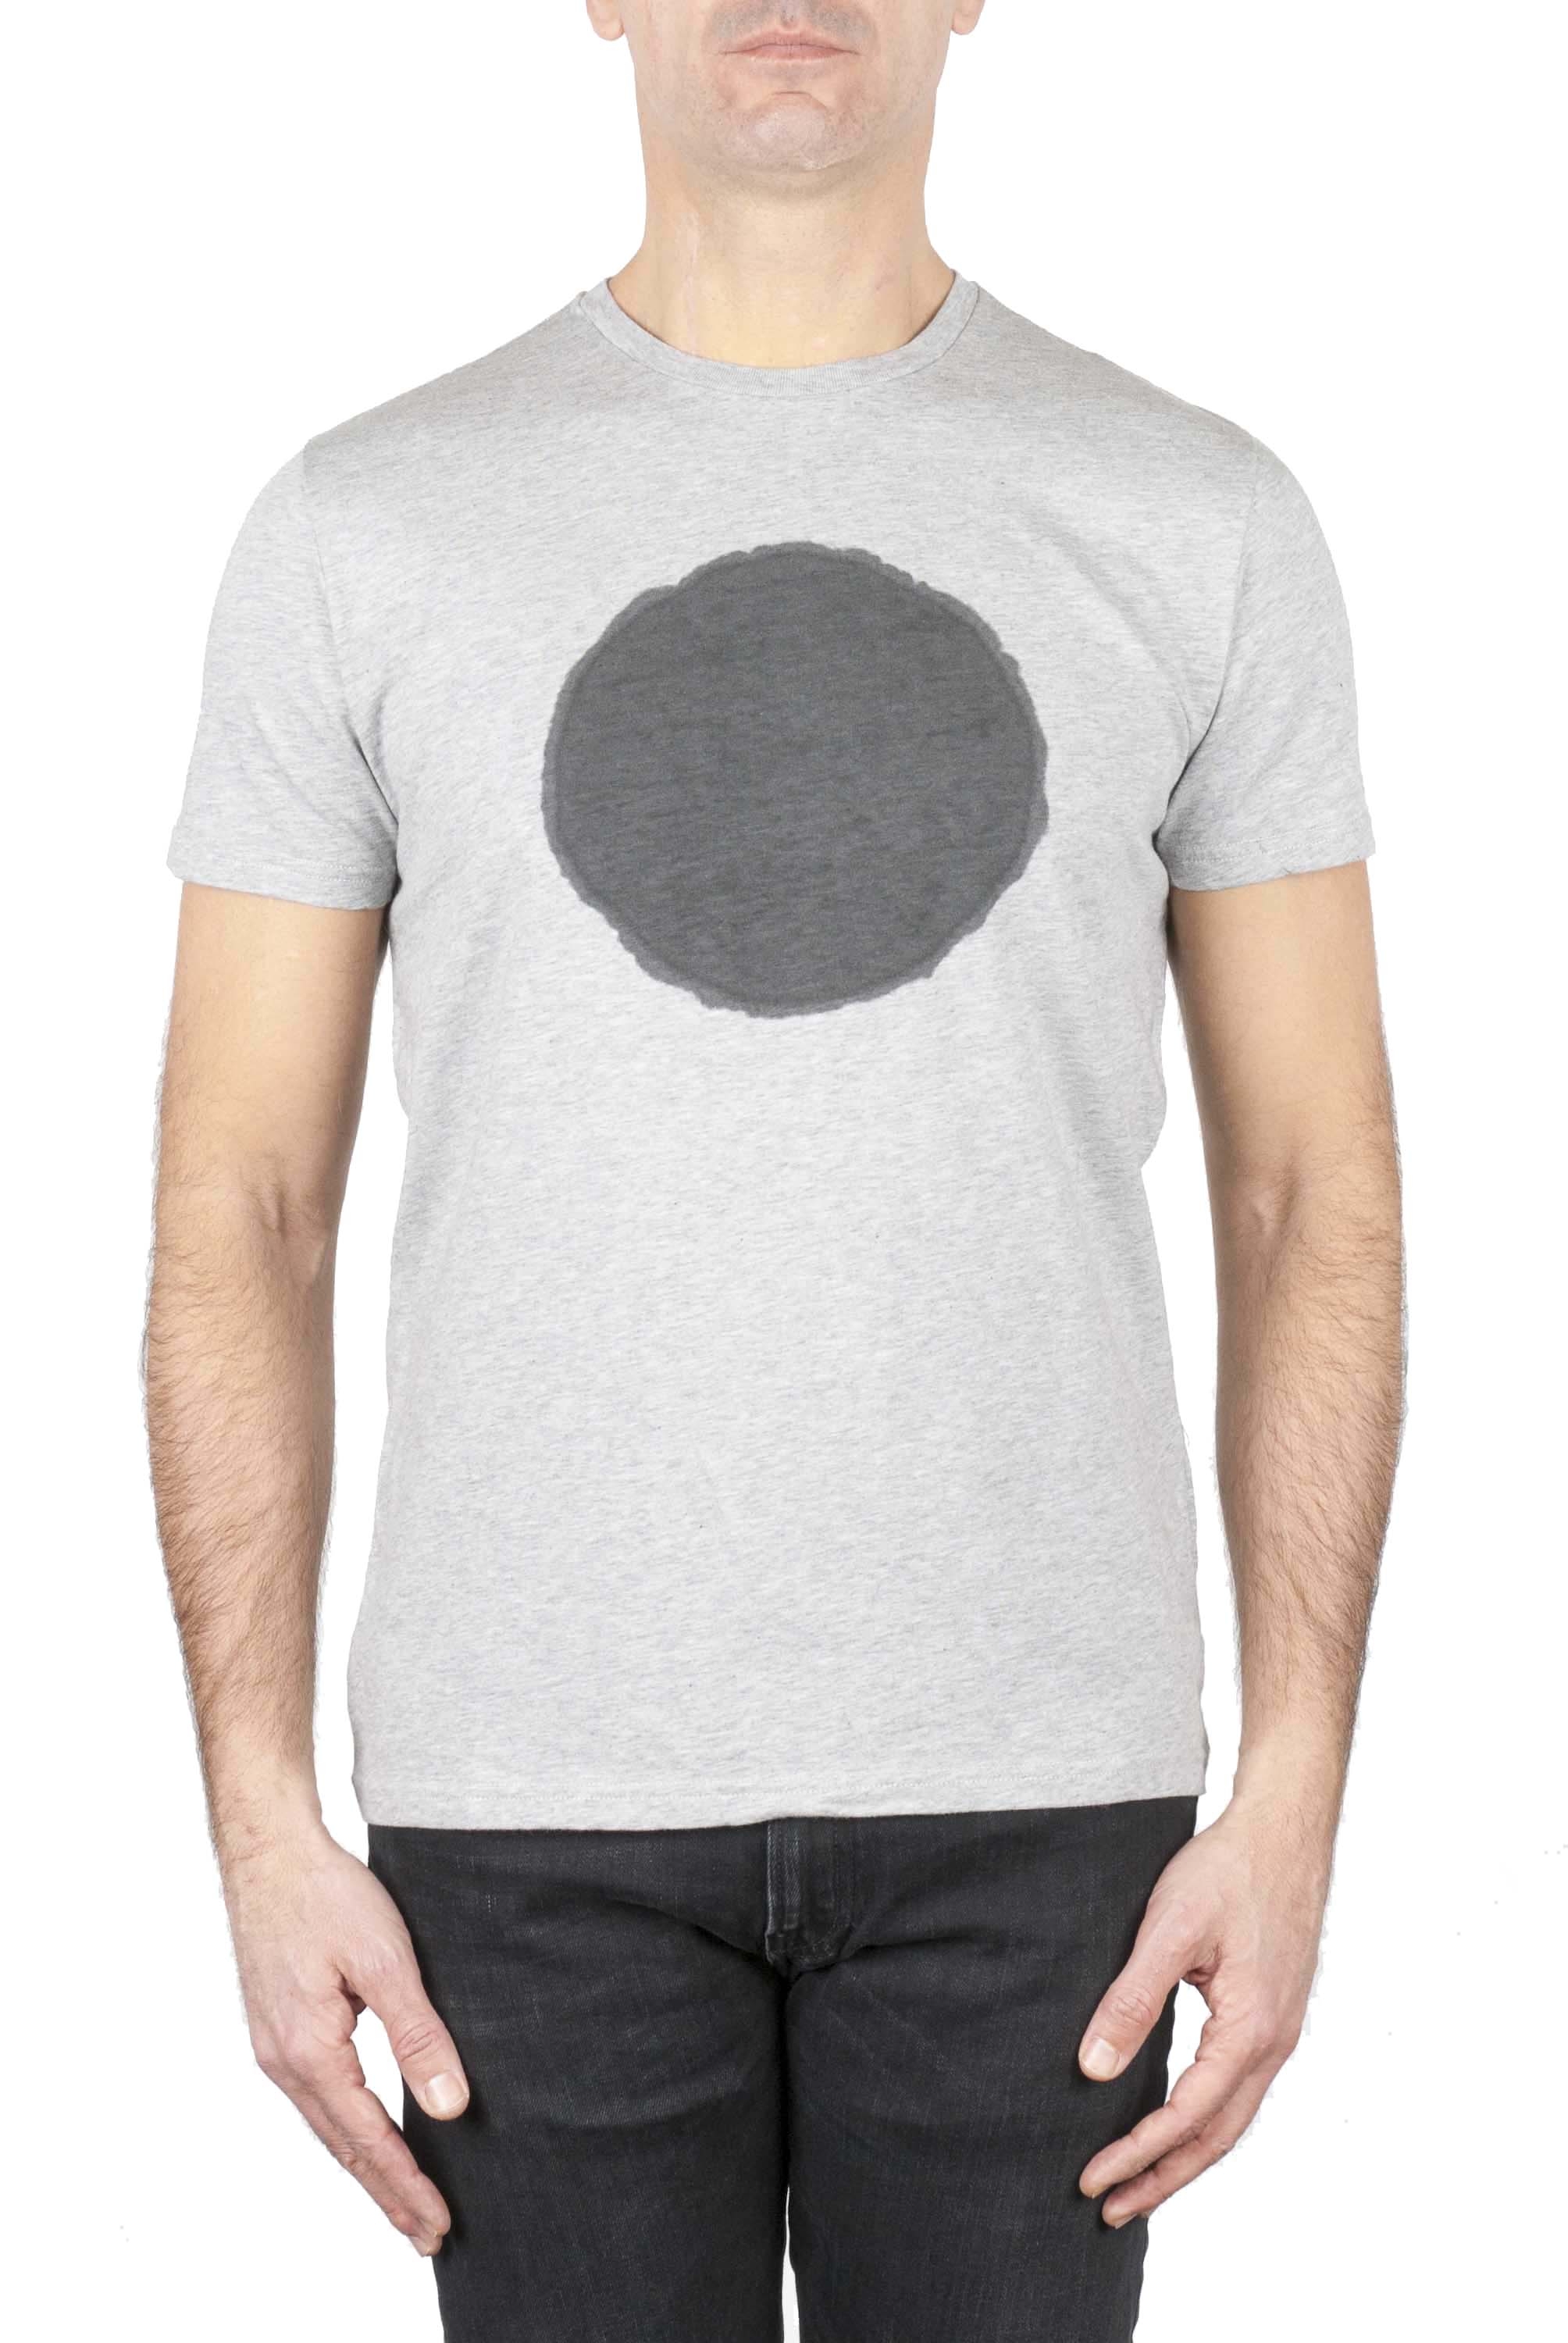 SBU 02846_2021SS Clásica camiseta de cuello redondo manga corta de algodón negra y gris gráfica impresa 01